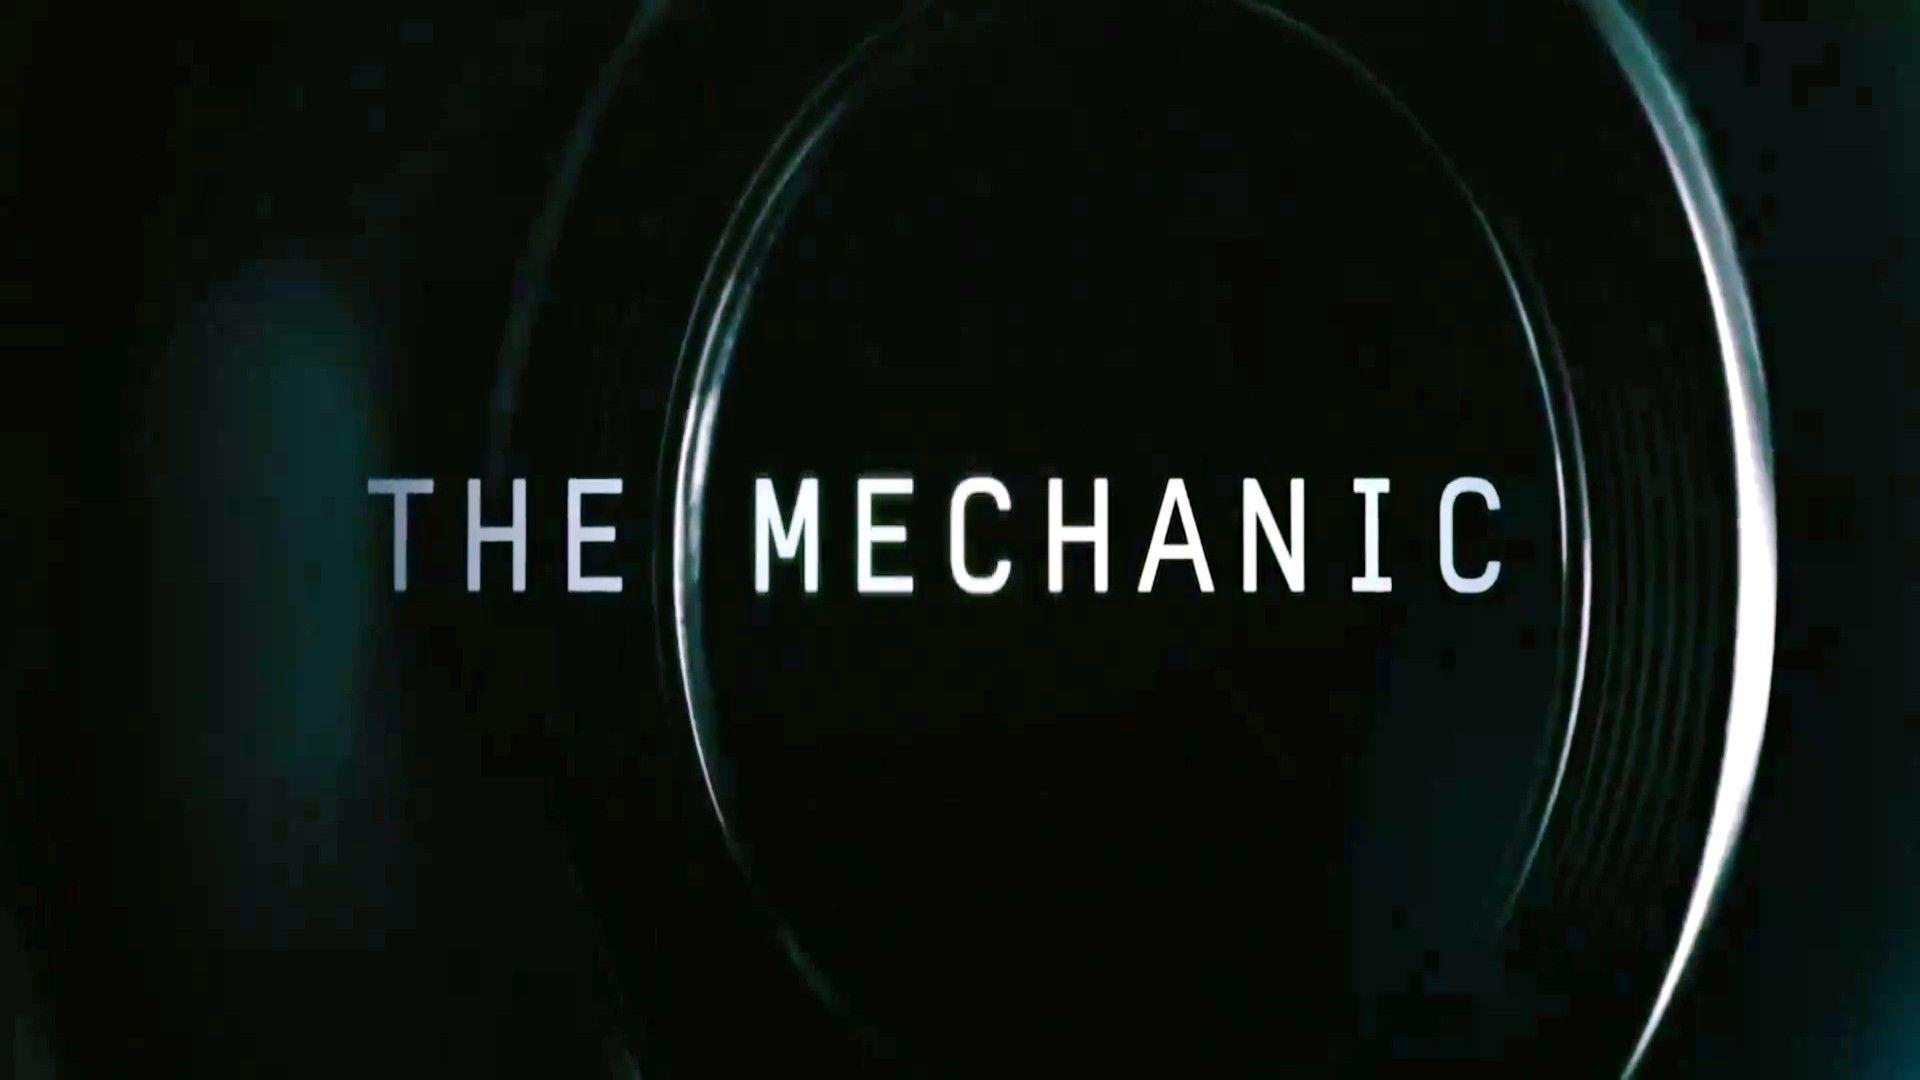 Wallpaper Mechanical The Mechanic 1920x1080 #mechanical